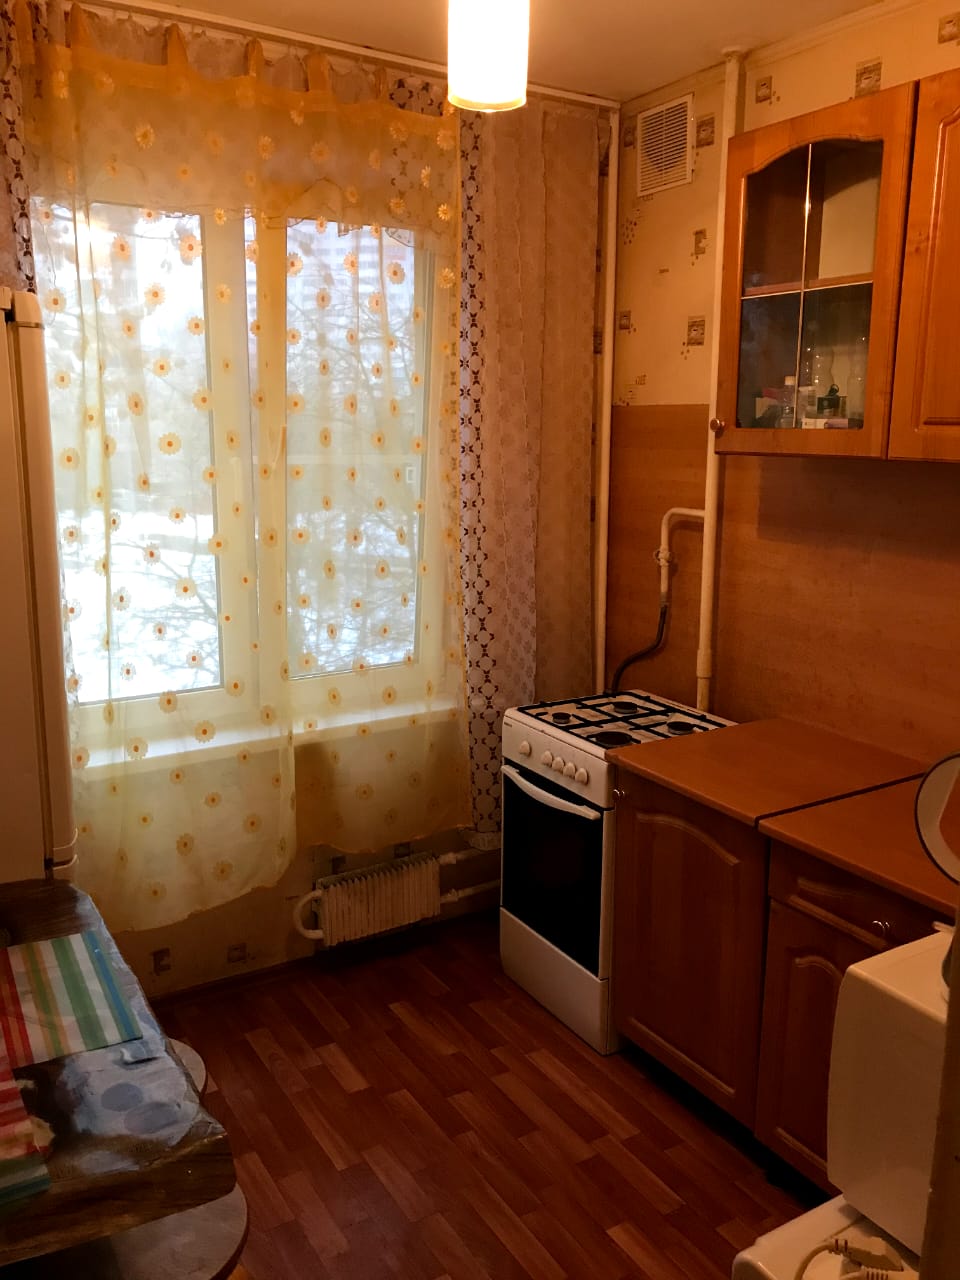 Однокомнатная квартира на улице Родионова в Химках. Кухня